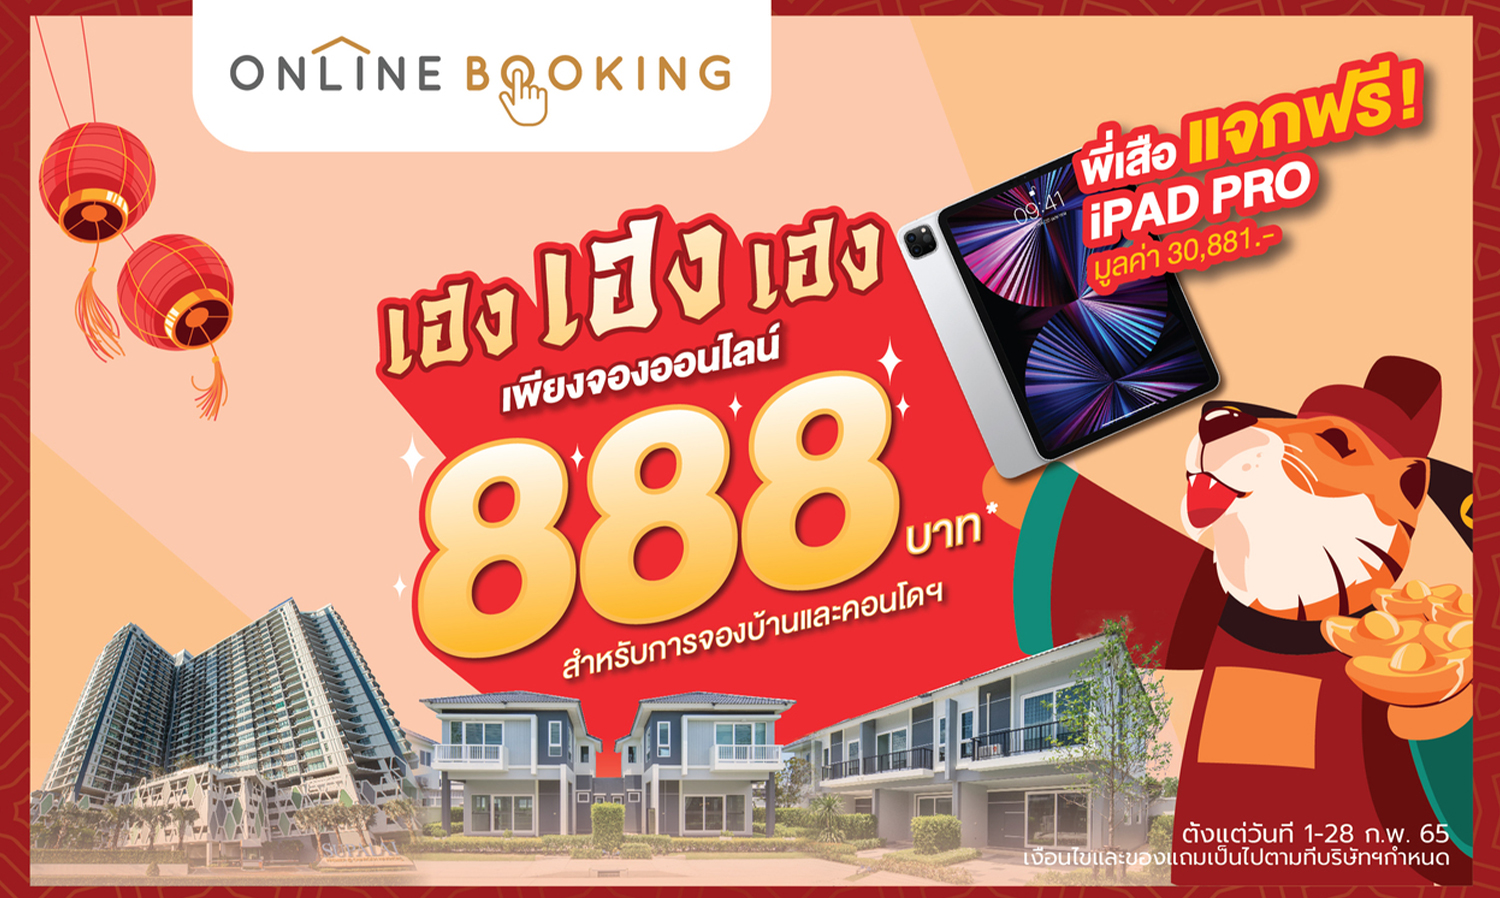 ศุภาลัย ปล่อยโปรฯเด็ด “เฮง เฮง เฮง” จองเพียง 888 บาท ผ่าน Online Booking รับ iPad Pro ฟรีทุกแปลง ทุกยูนิต